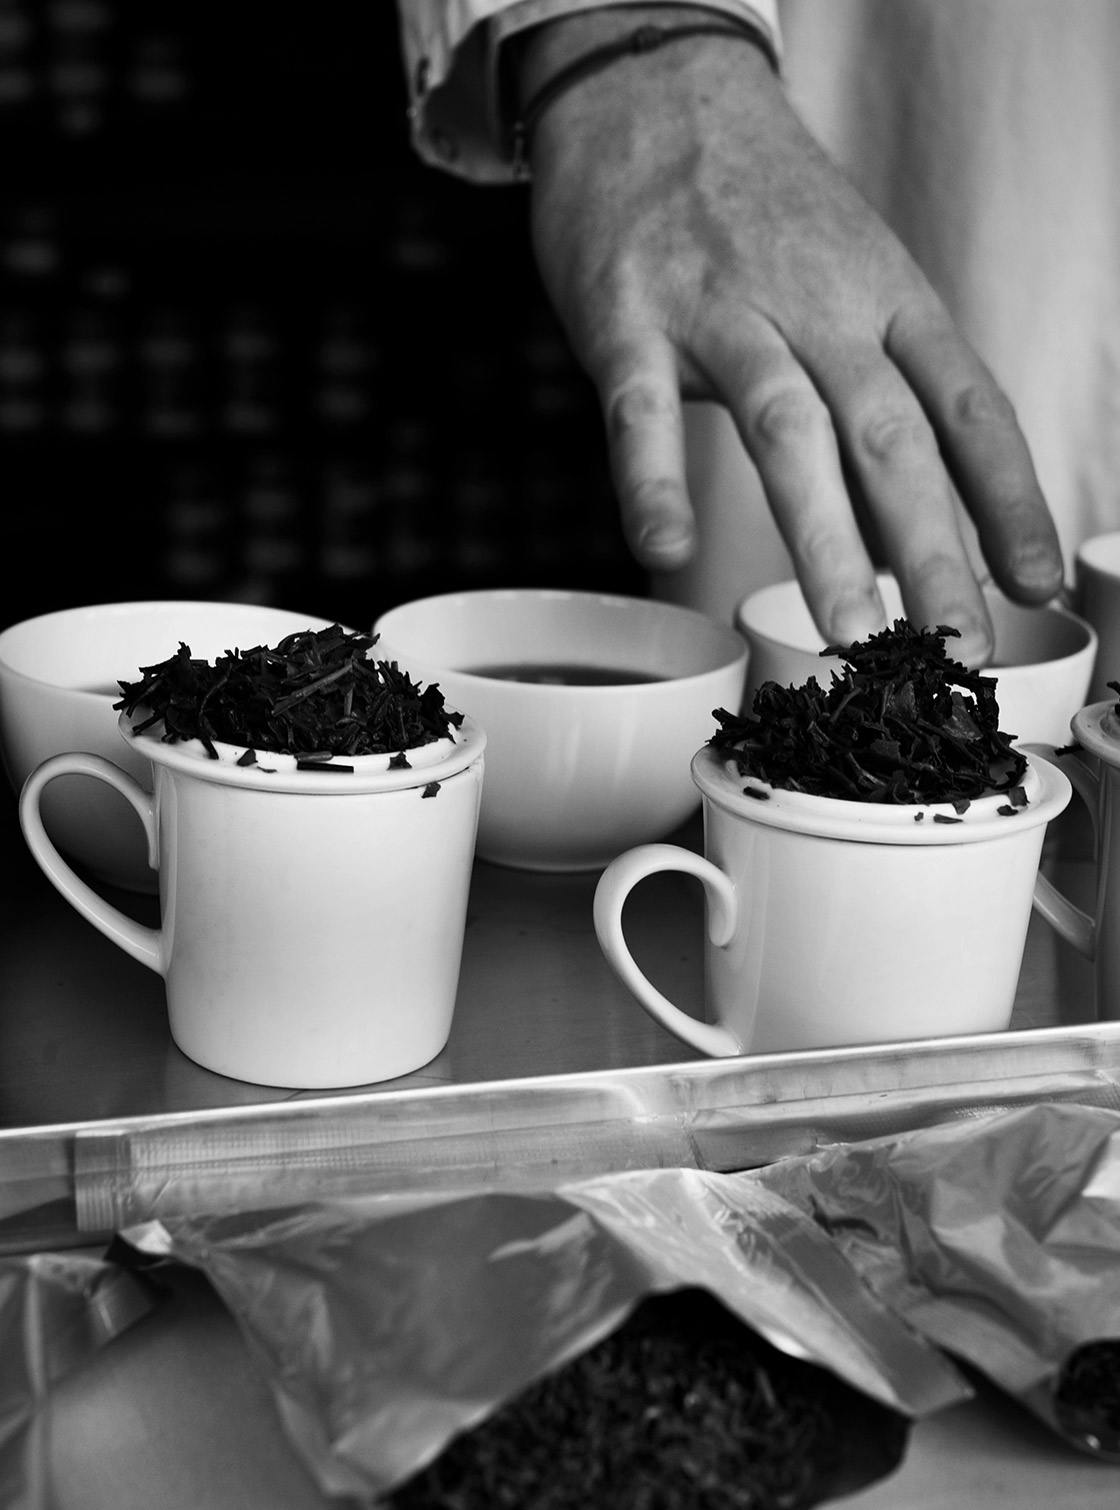 Coffret Désire - 20 sachets de thés noirs aromatisés